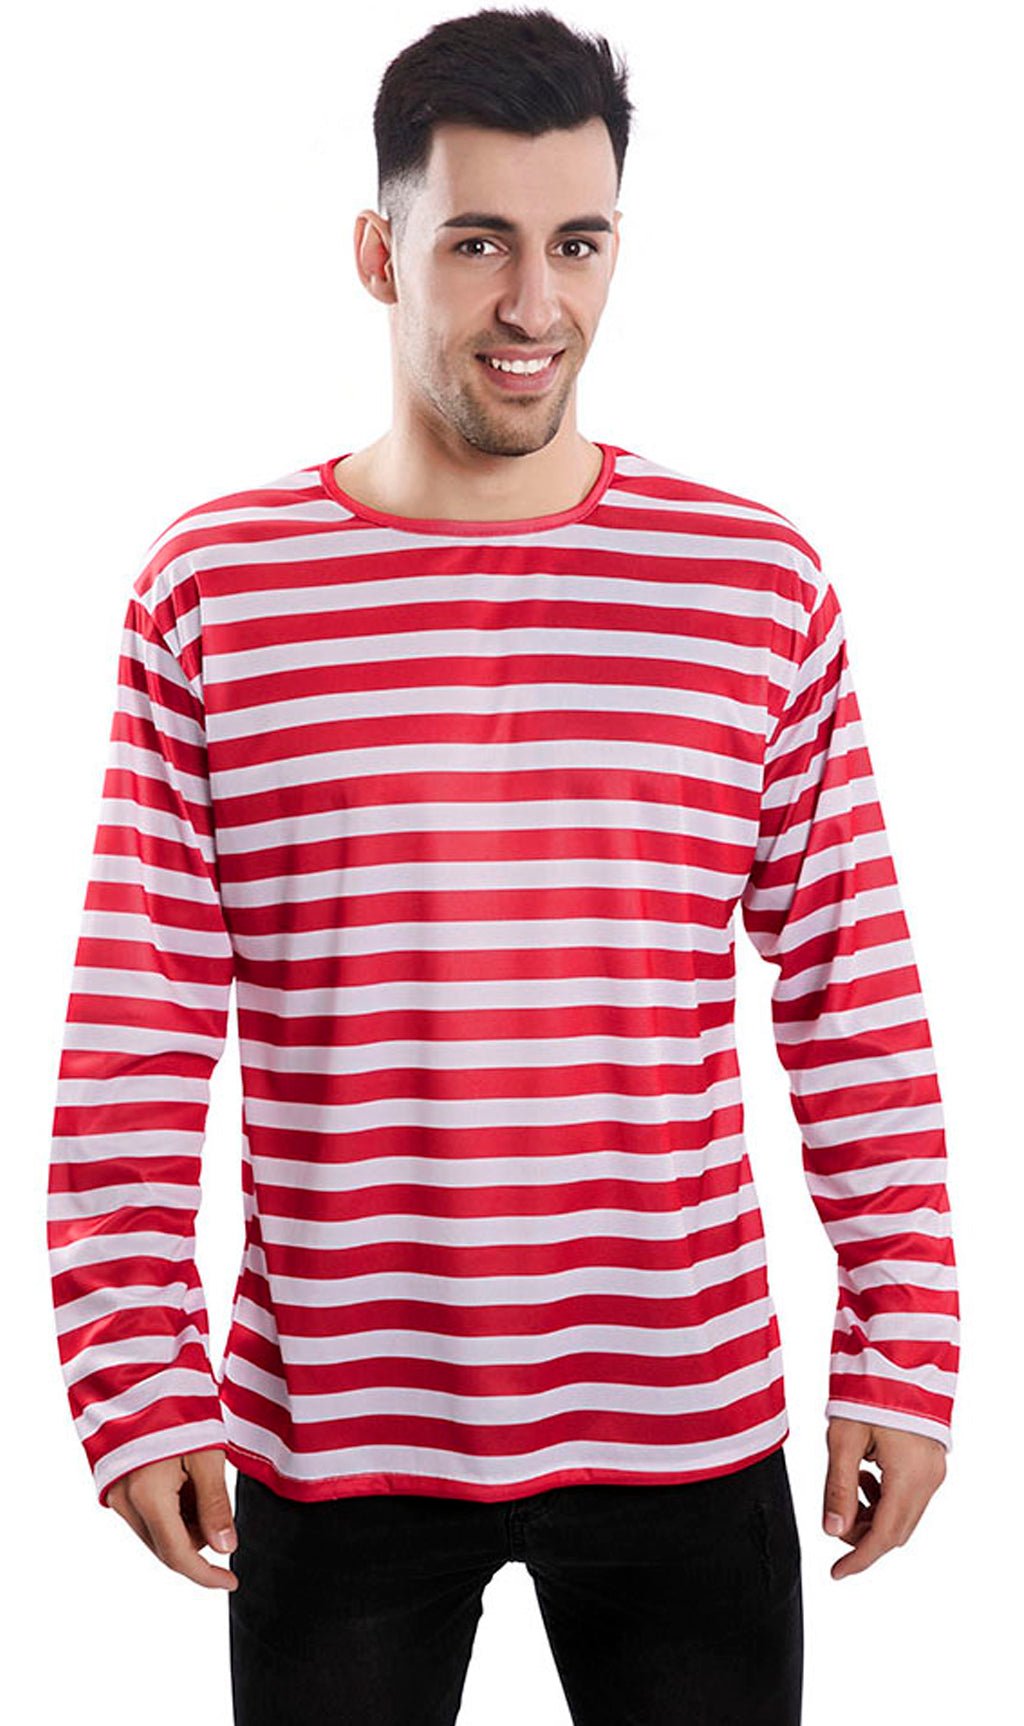 Comprar online Camiseta de Rayas Rojas